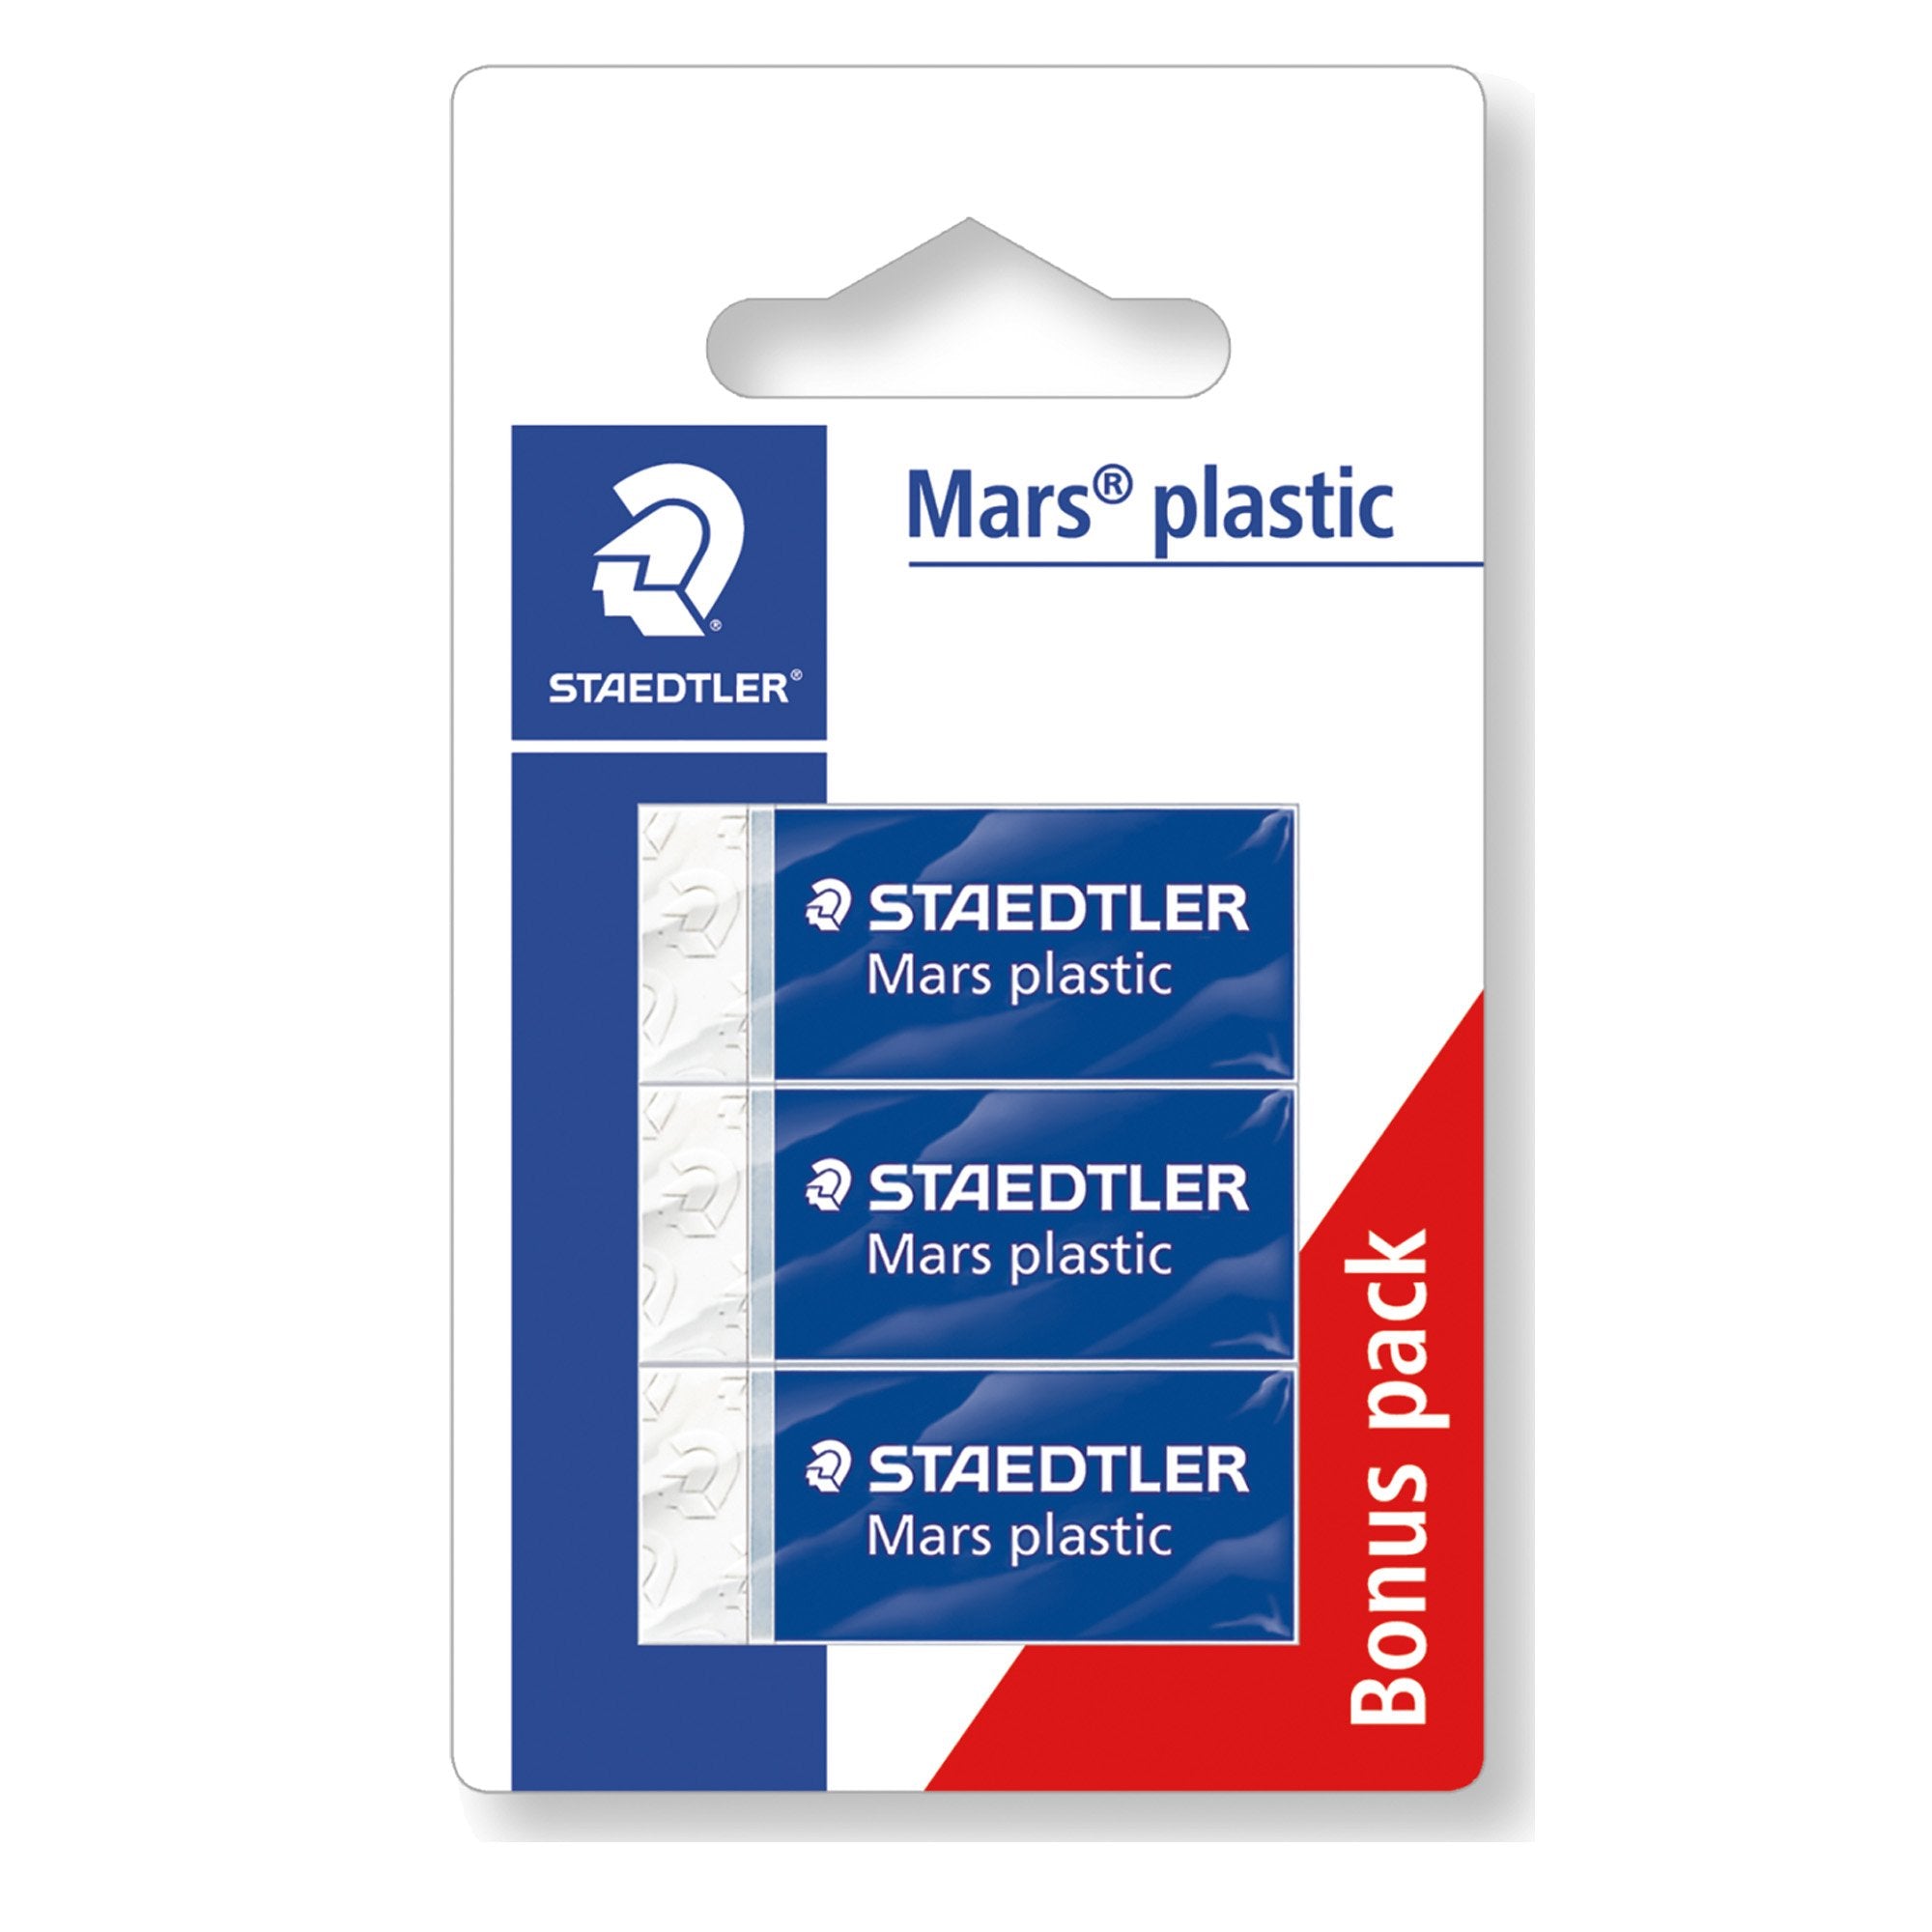 staedtler-blister-3-gomme-marsplastic-mini-526-53-bianca